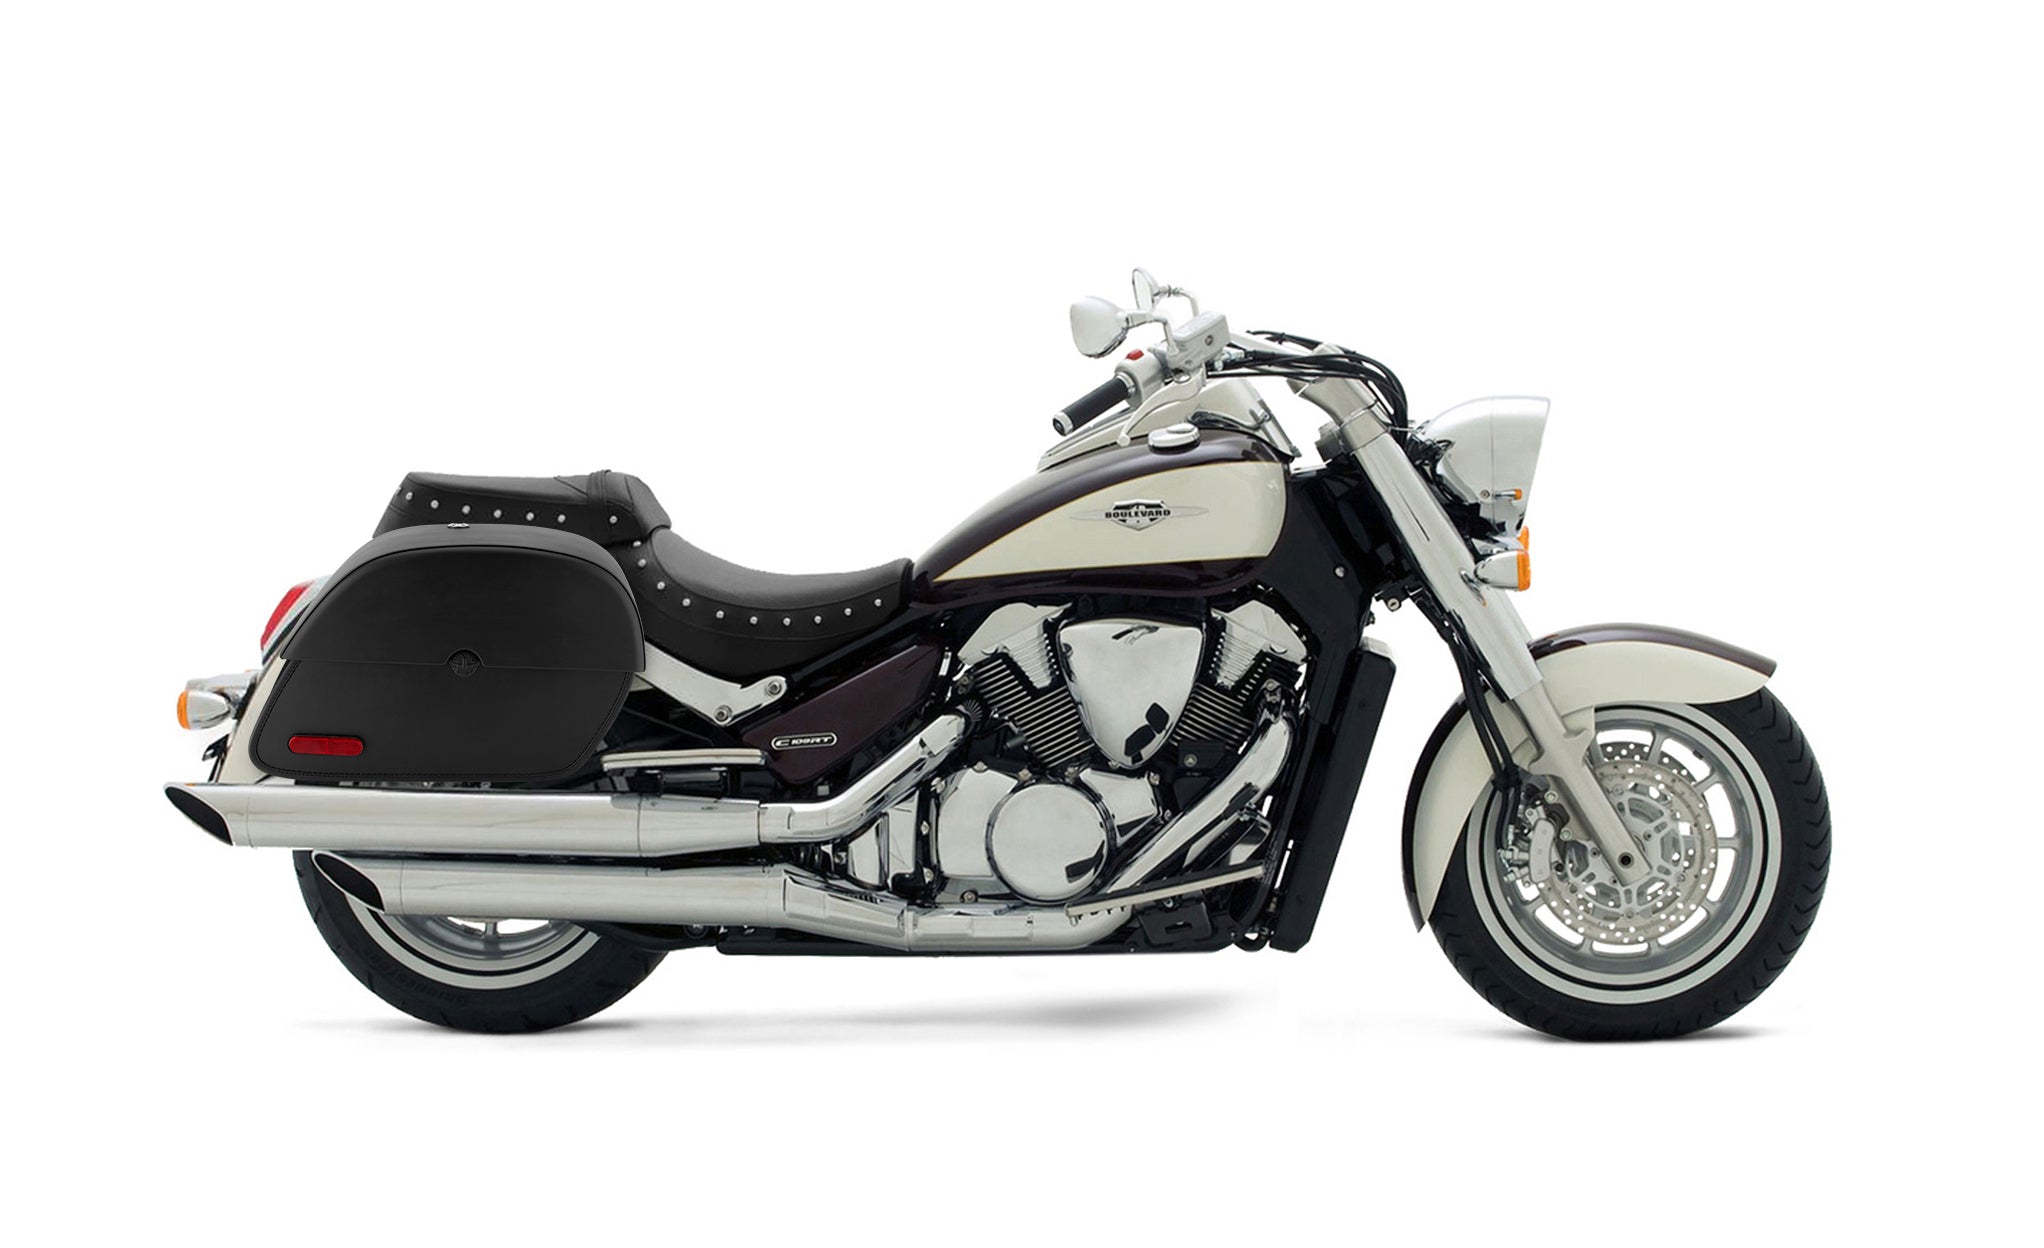 Viking Panzer Large Suzuki Boulevard C109 Leather Motorcycle Saddlebags on Bike Photo @expand